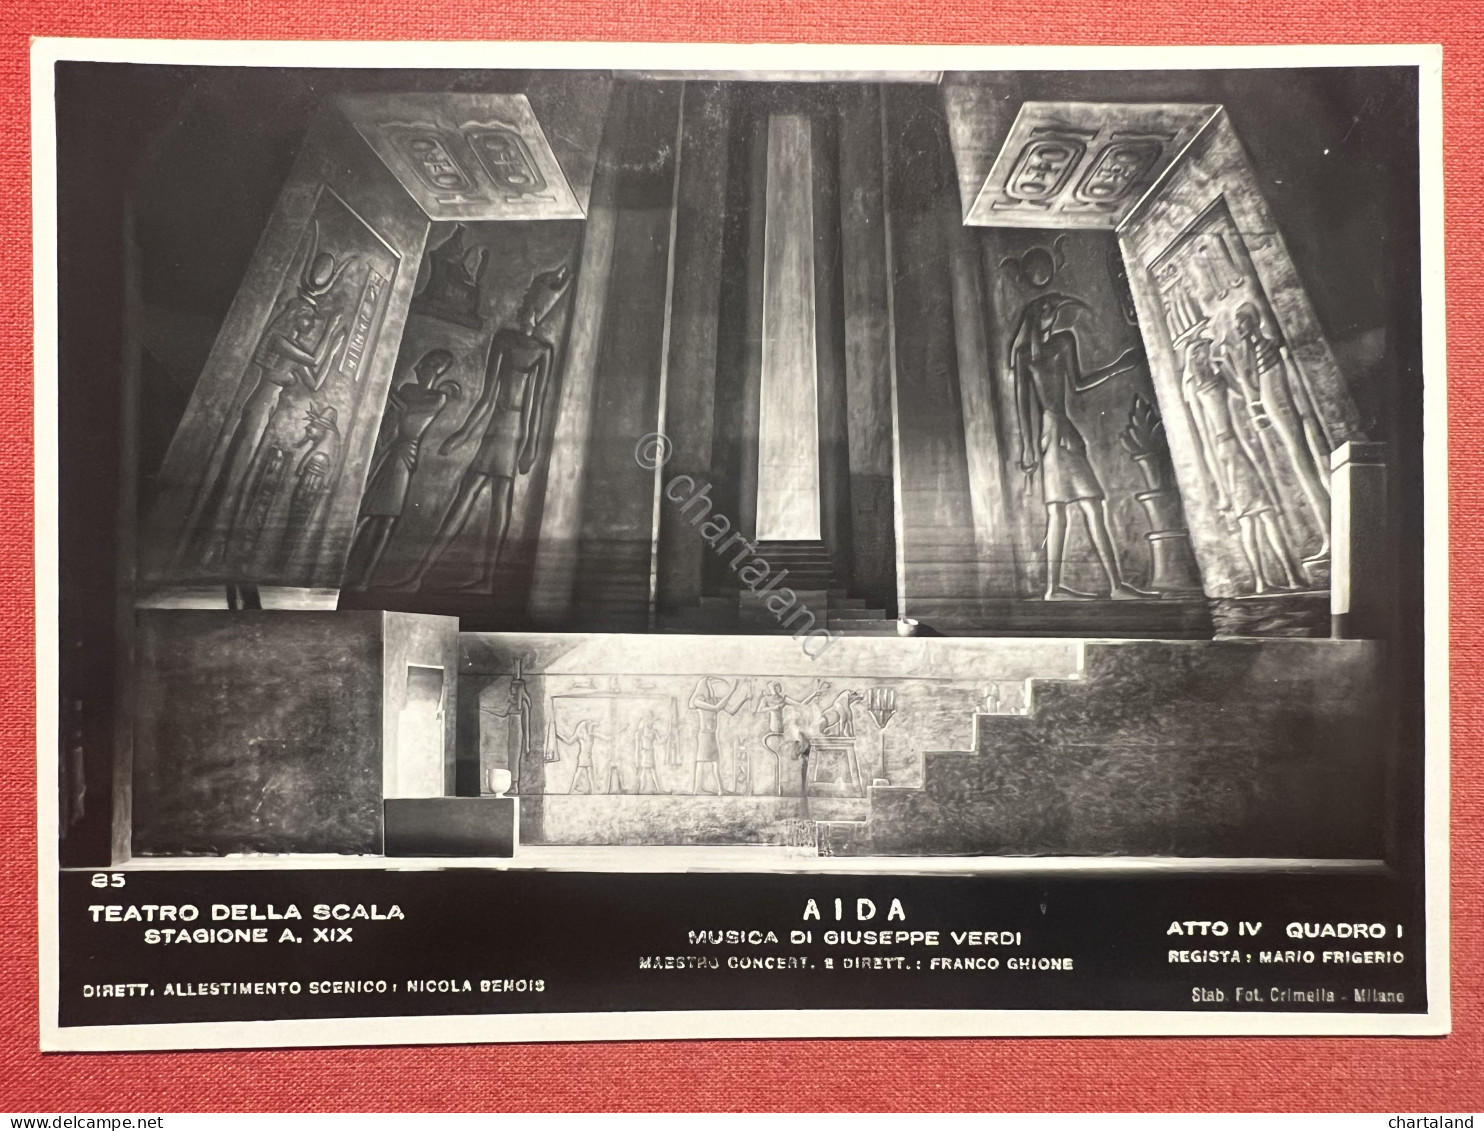 Cartolina - Teatro Della Scala - Aida Di G. Verdi - Atto Iv Quadro - 1955 Ca. - Milano